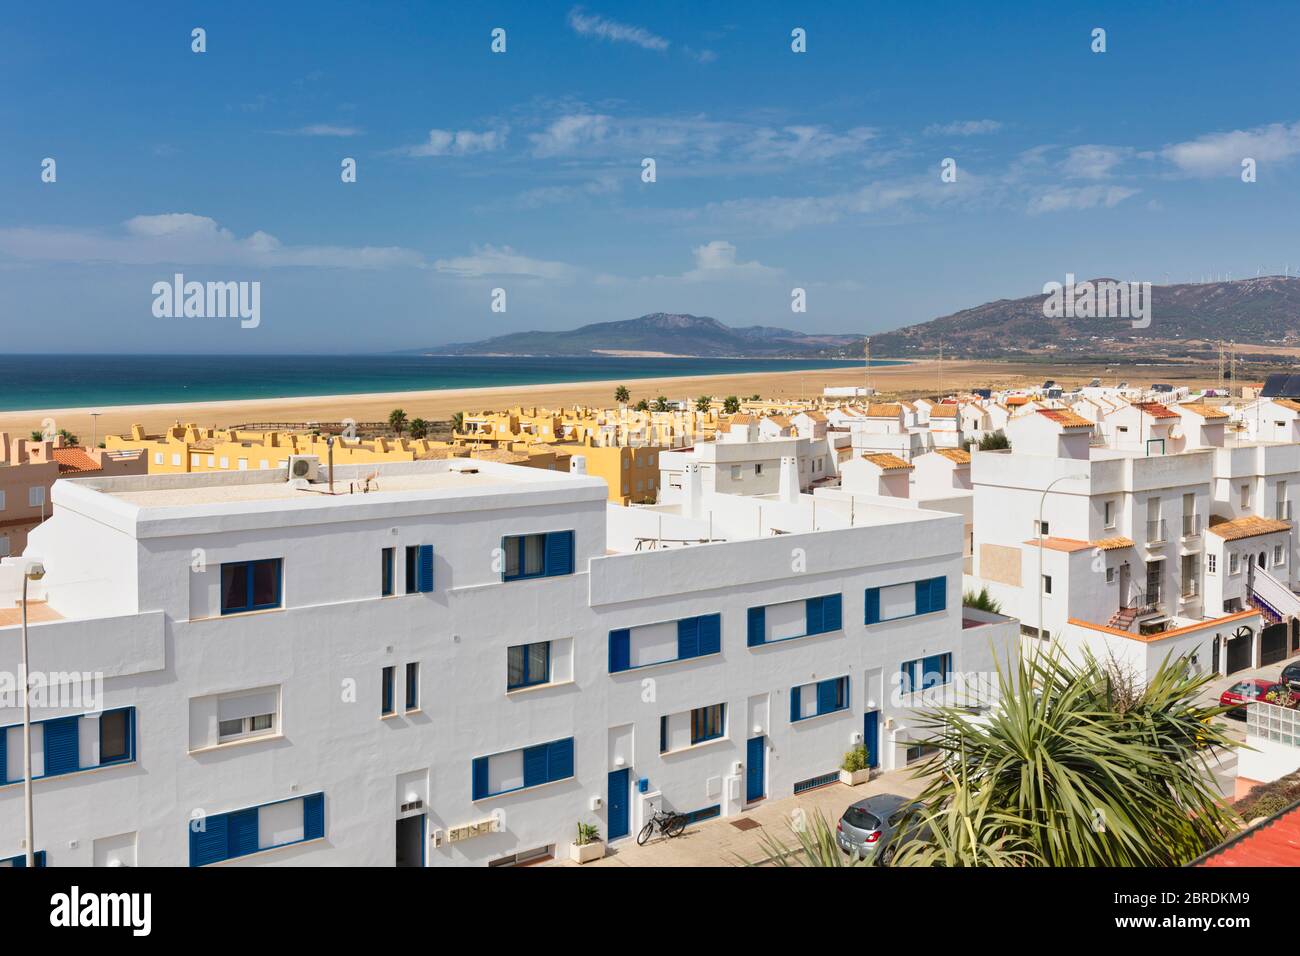 Propriété à Tarifa, Costa de la Luz, province de Cadix, Andalousie, sud de l'Espagne. Plage de Los Lances en arrière-plan. Banque D'Images